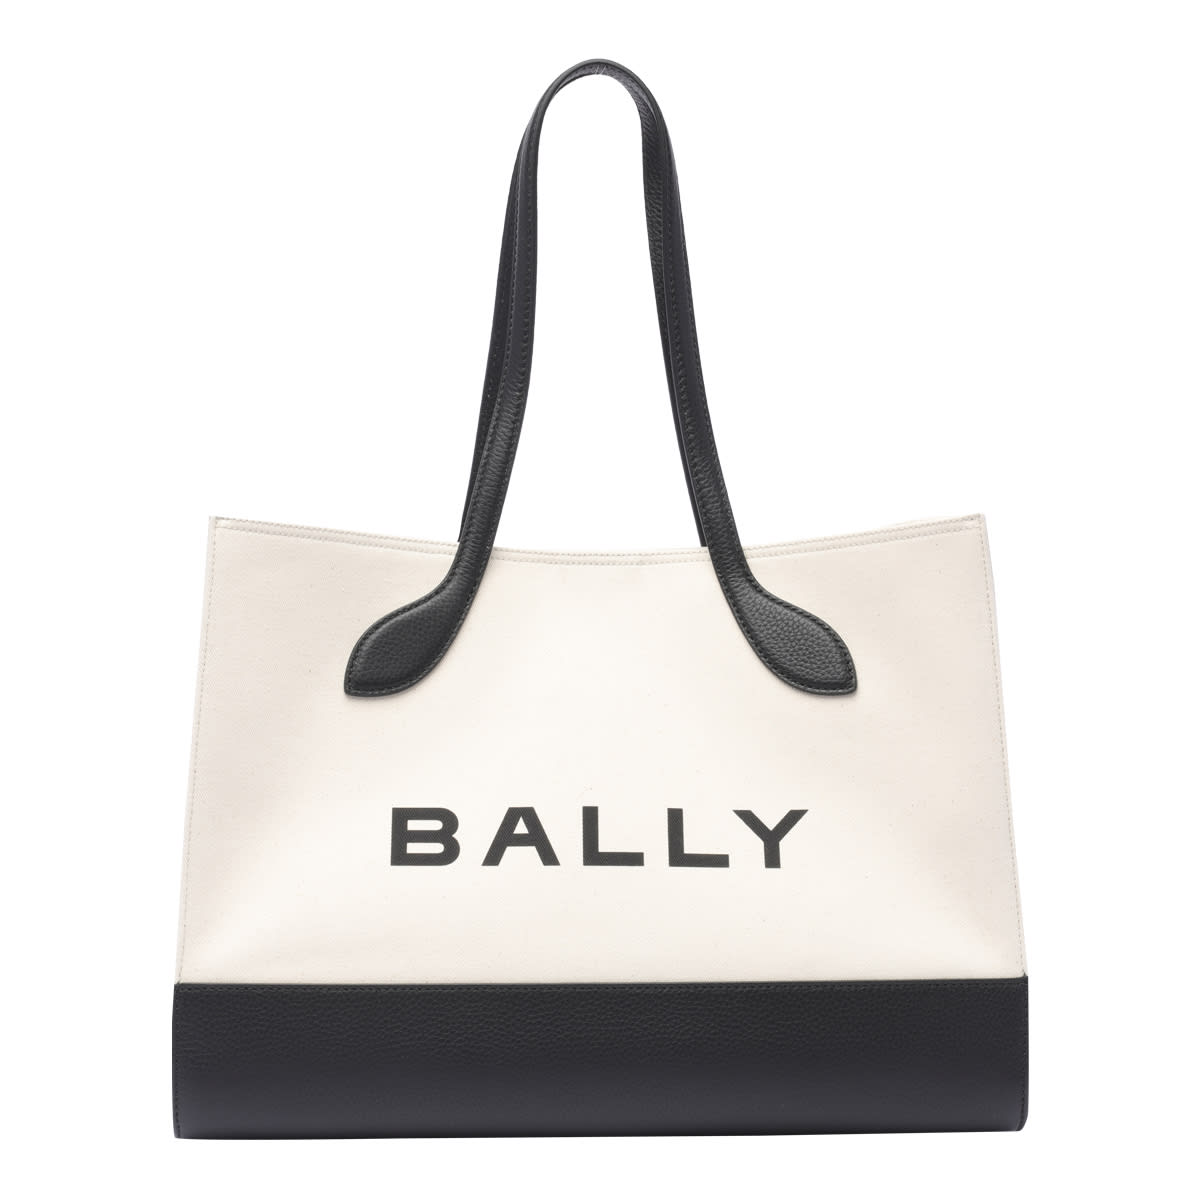 Bally Keep On Tote Bag